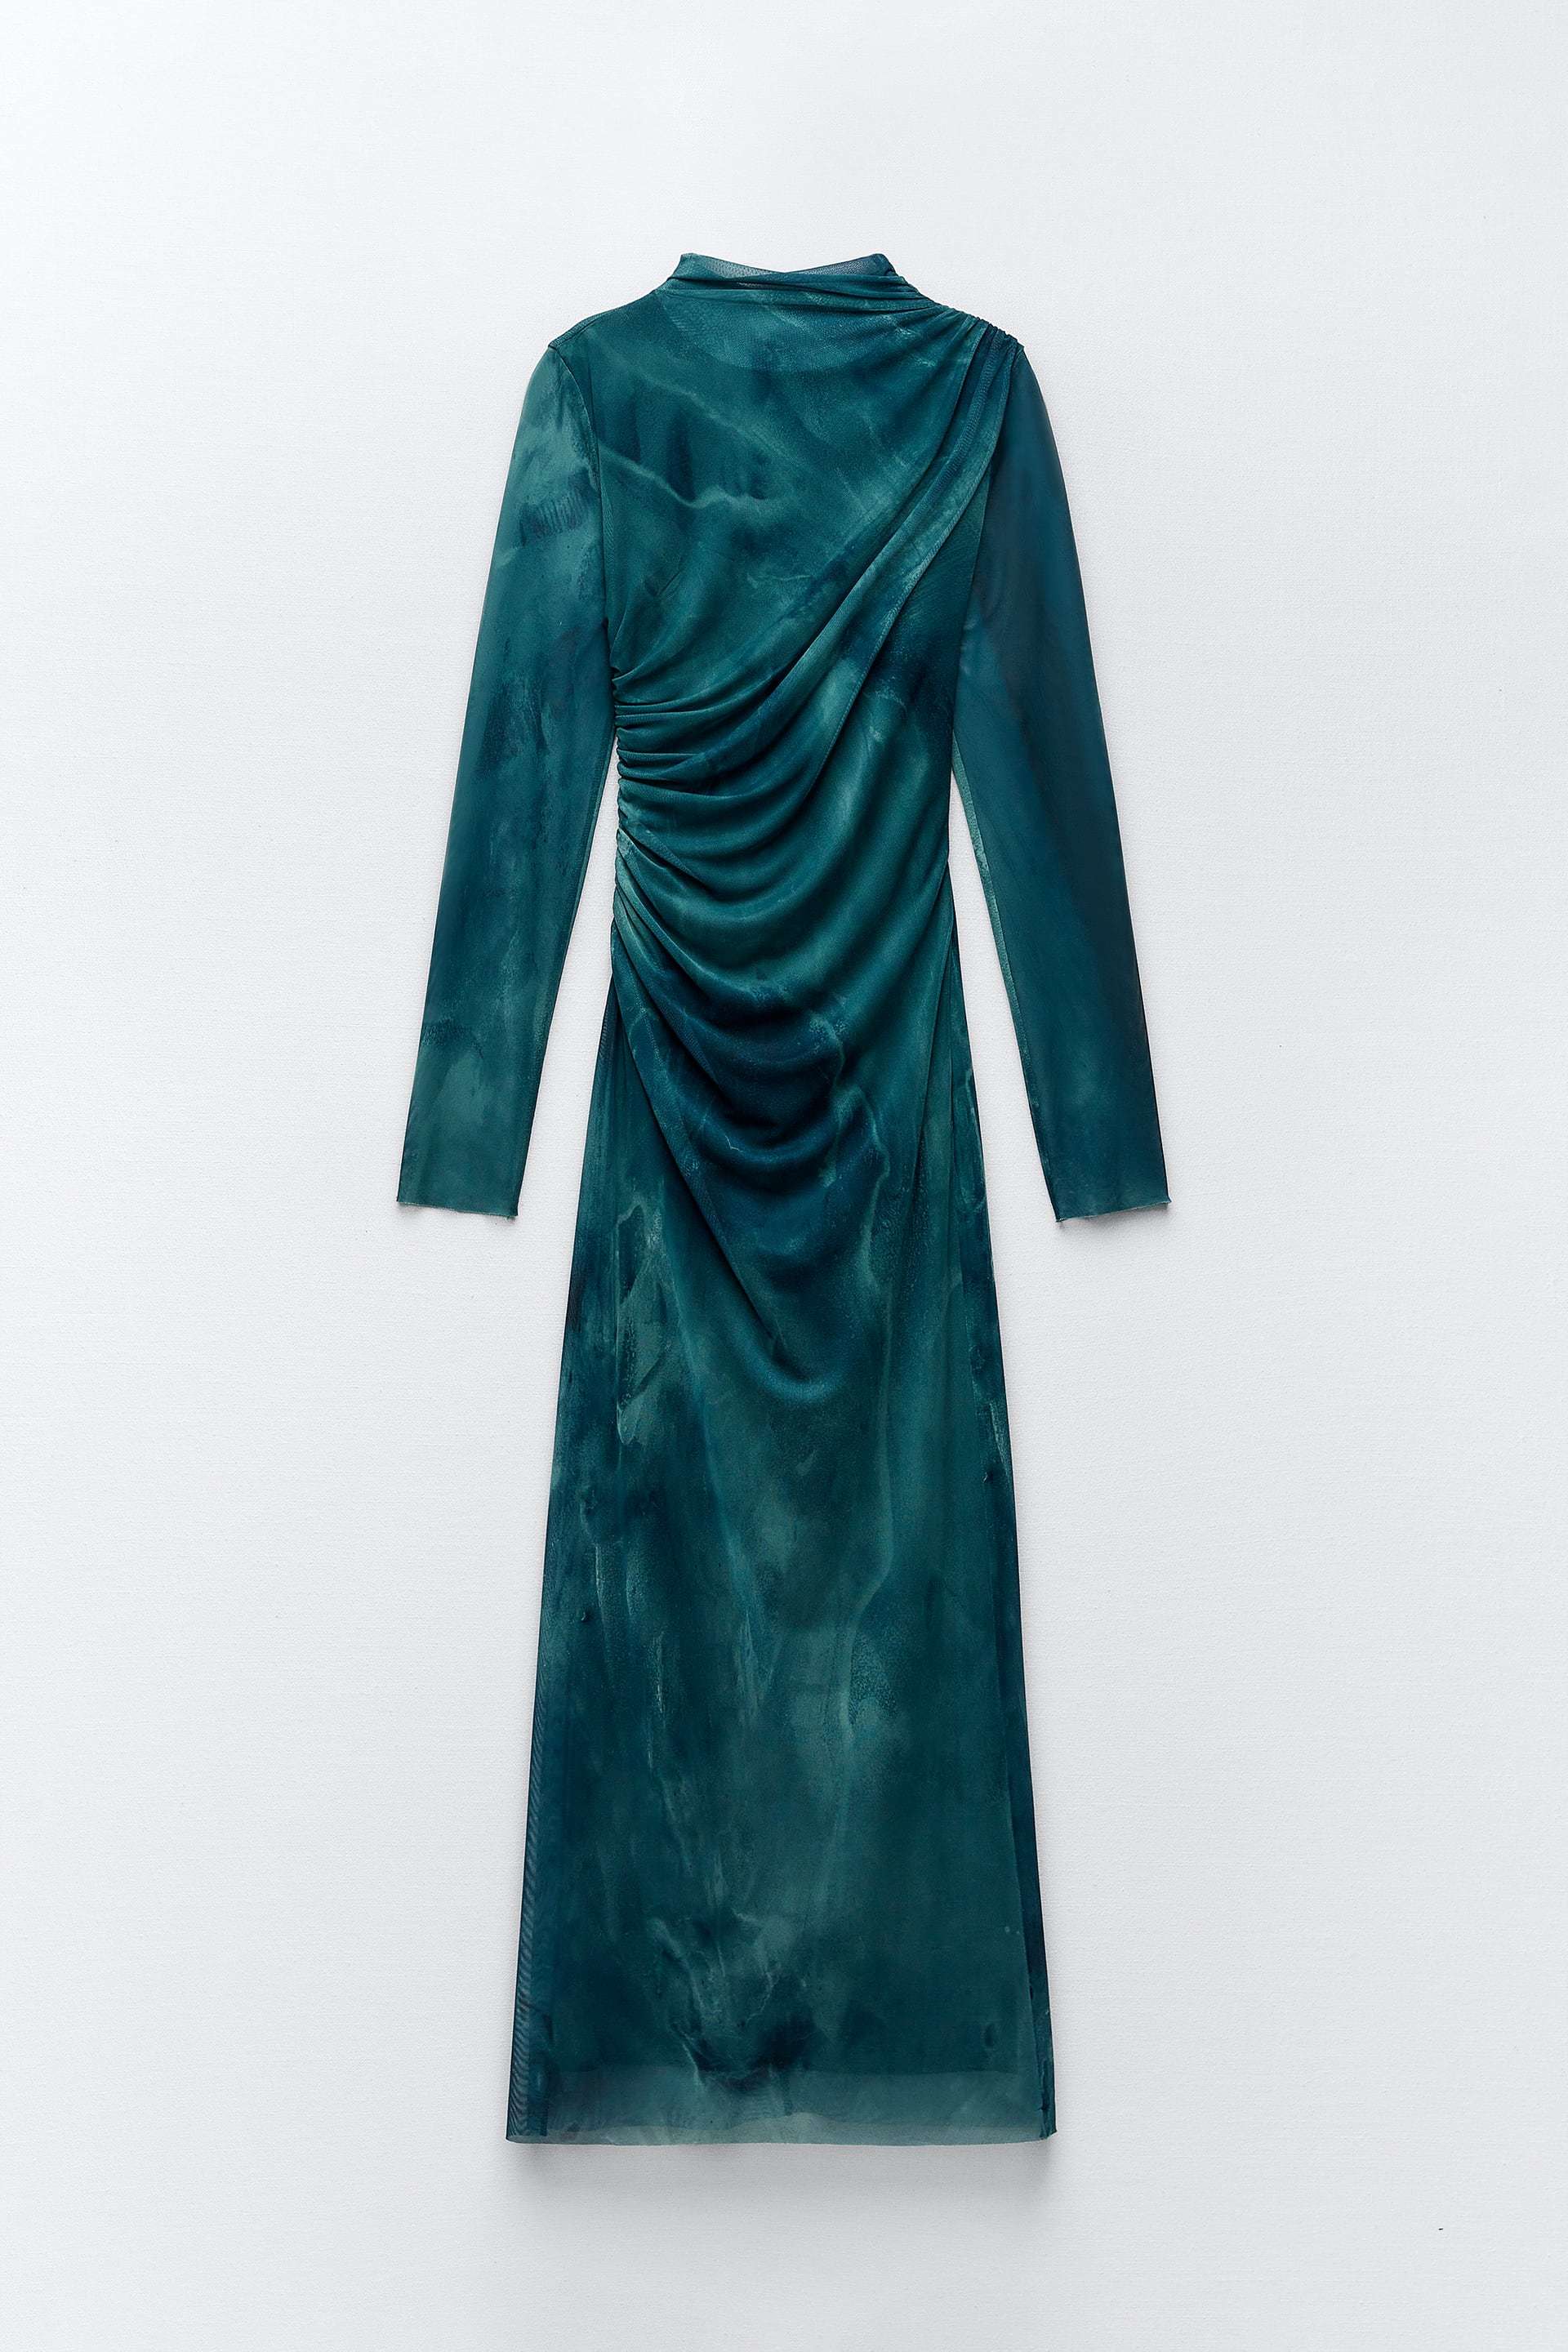 Vestido de tul con estampado tie dye de Zara (35,95 euros).